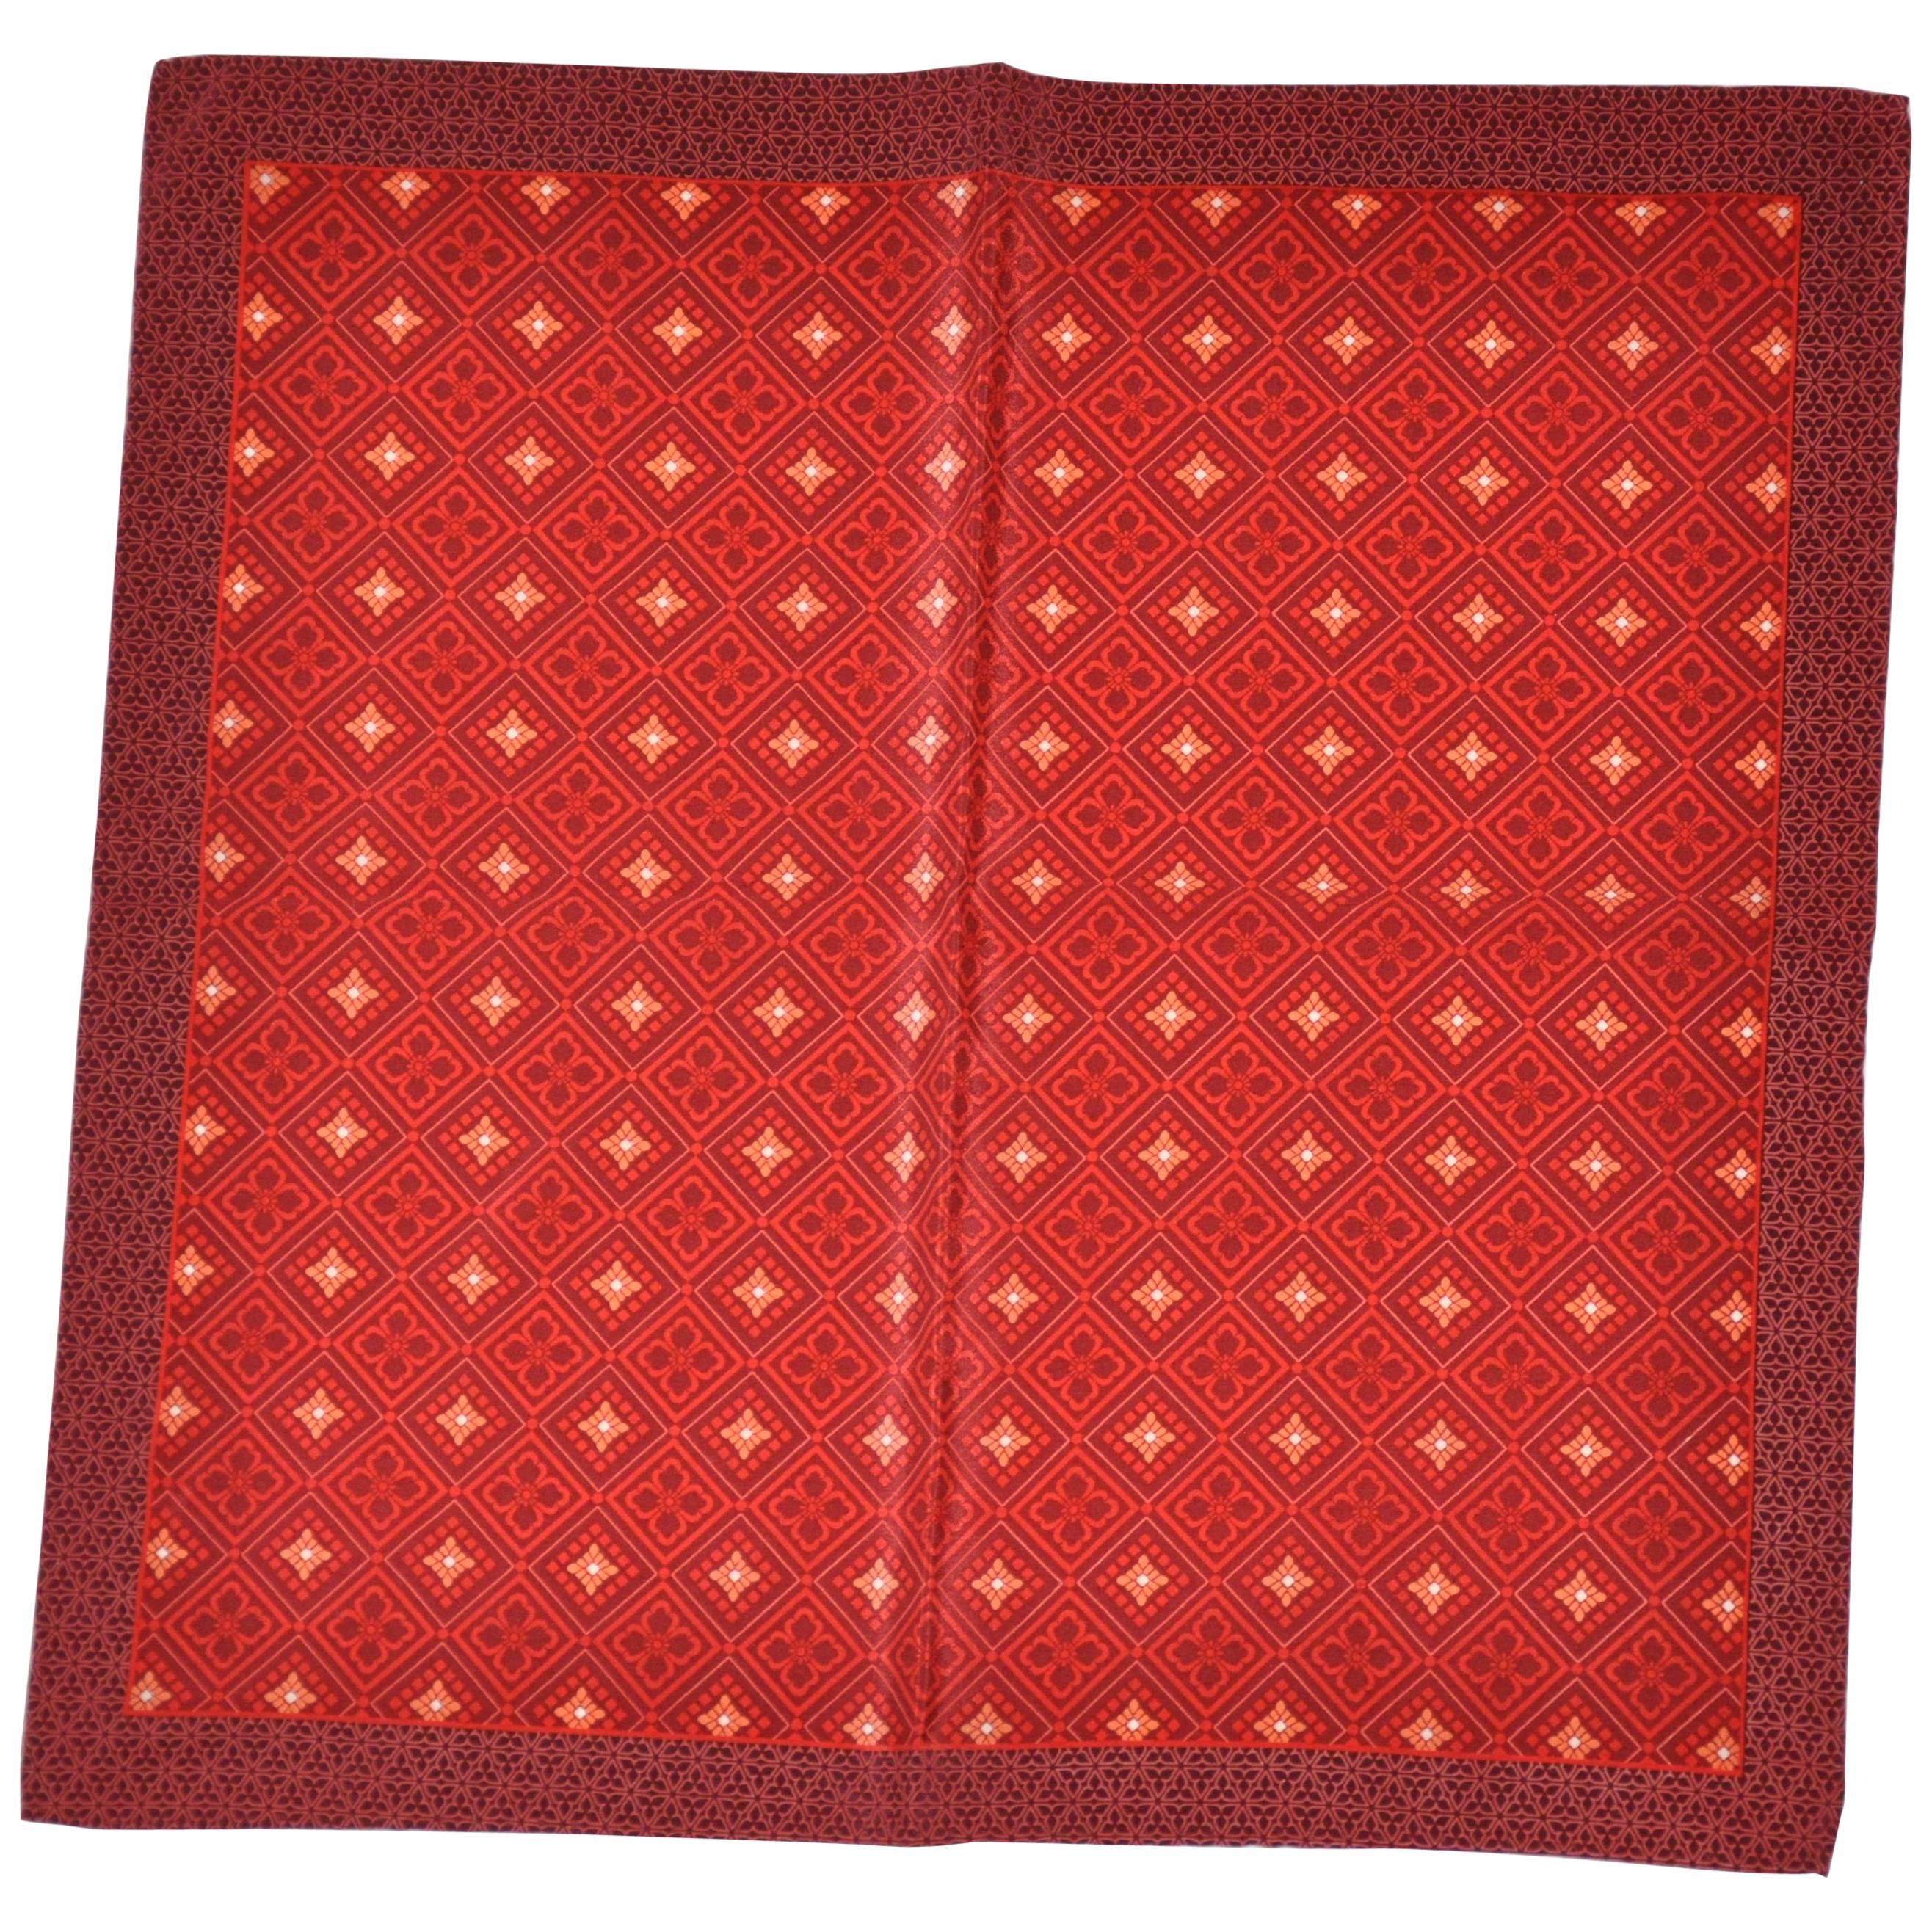 Mouchoir à main en soie bordeaux avec plusieurs rouges au centre